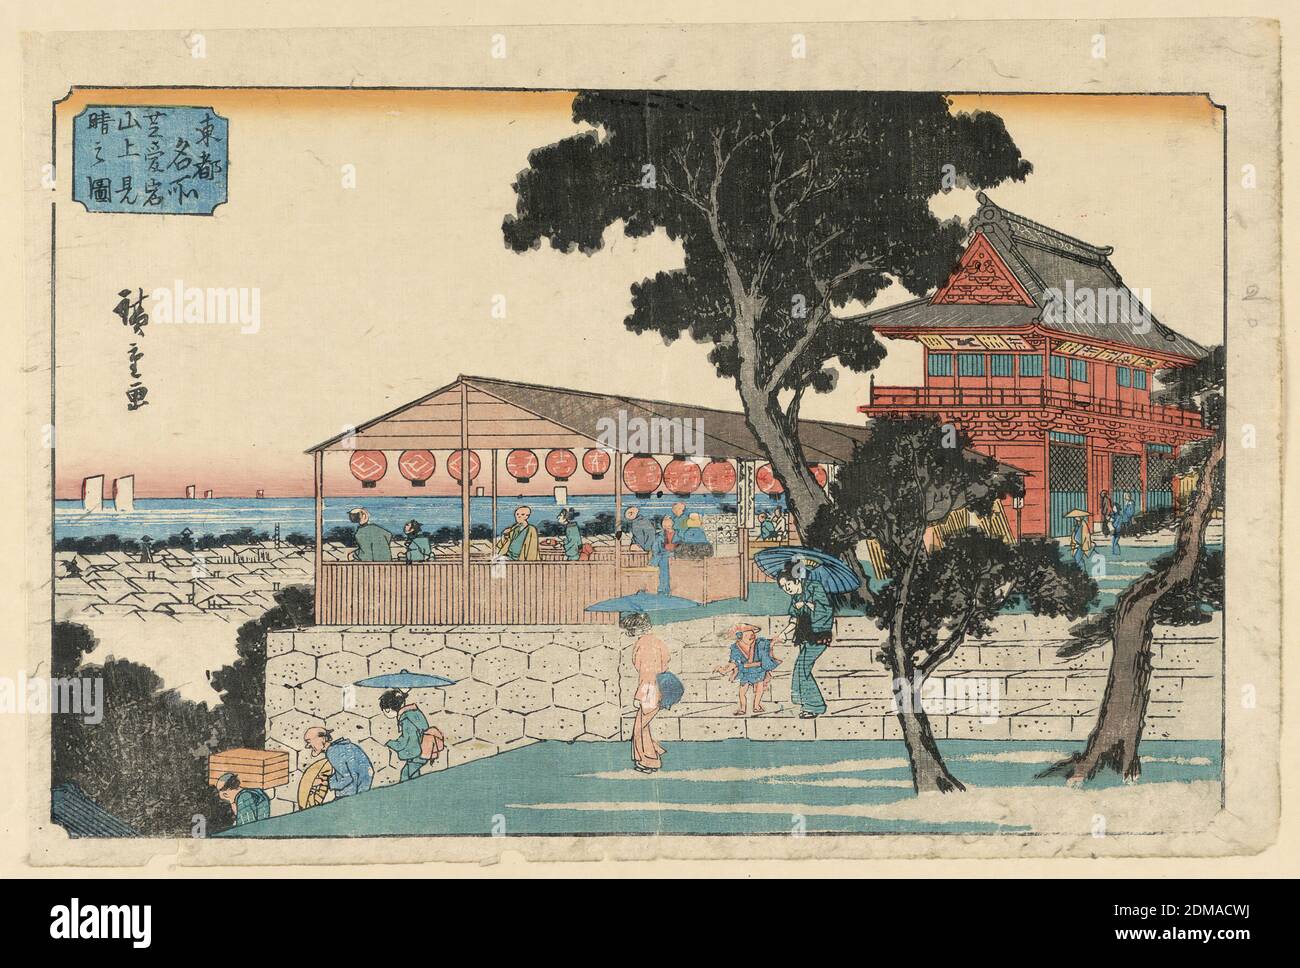 Descendiendo un santuario, Ando Hiroshige, japonés, 1797–1858, estampado Woodblock en tinta de color sobre papel, un santuario en la cima de una colina está decorado con faroles. Una familia está bajando las escaleras. Una mujer mira hacia atrás al niño pequeño. Una madre equilibra elegantemente una sombrilla en una mano mientras guía a su hijo por los escalones empinados. Esta brillante escena tiene vistas a los tejados y al océano, Japón, 1797-1858, paisajes, impresión Foto de stock